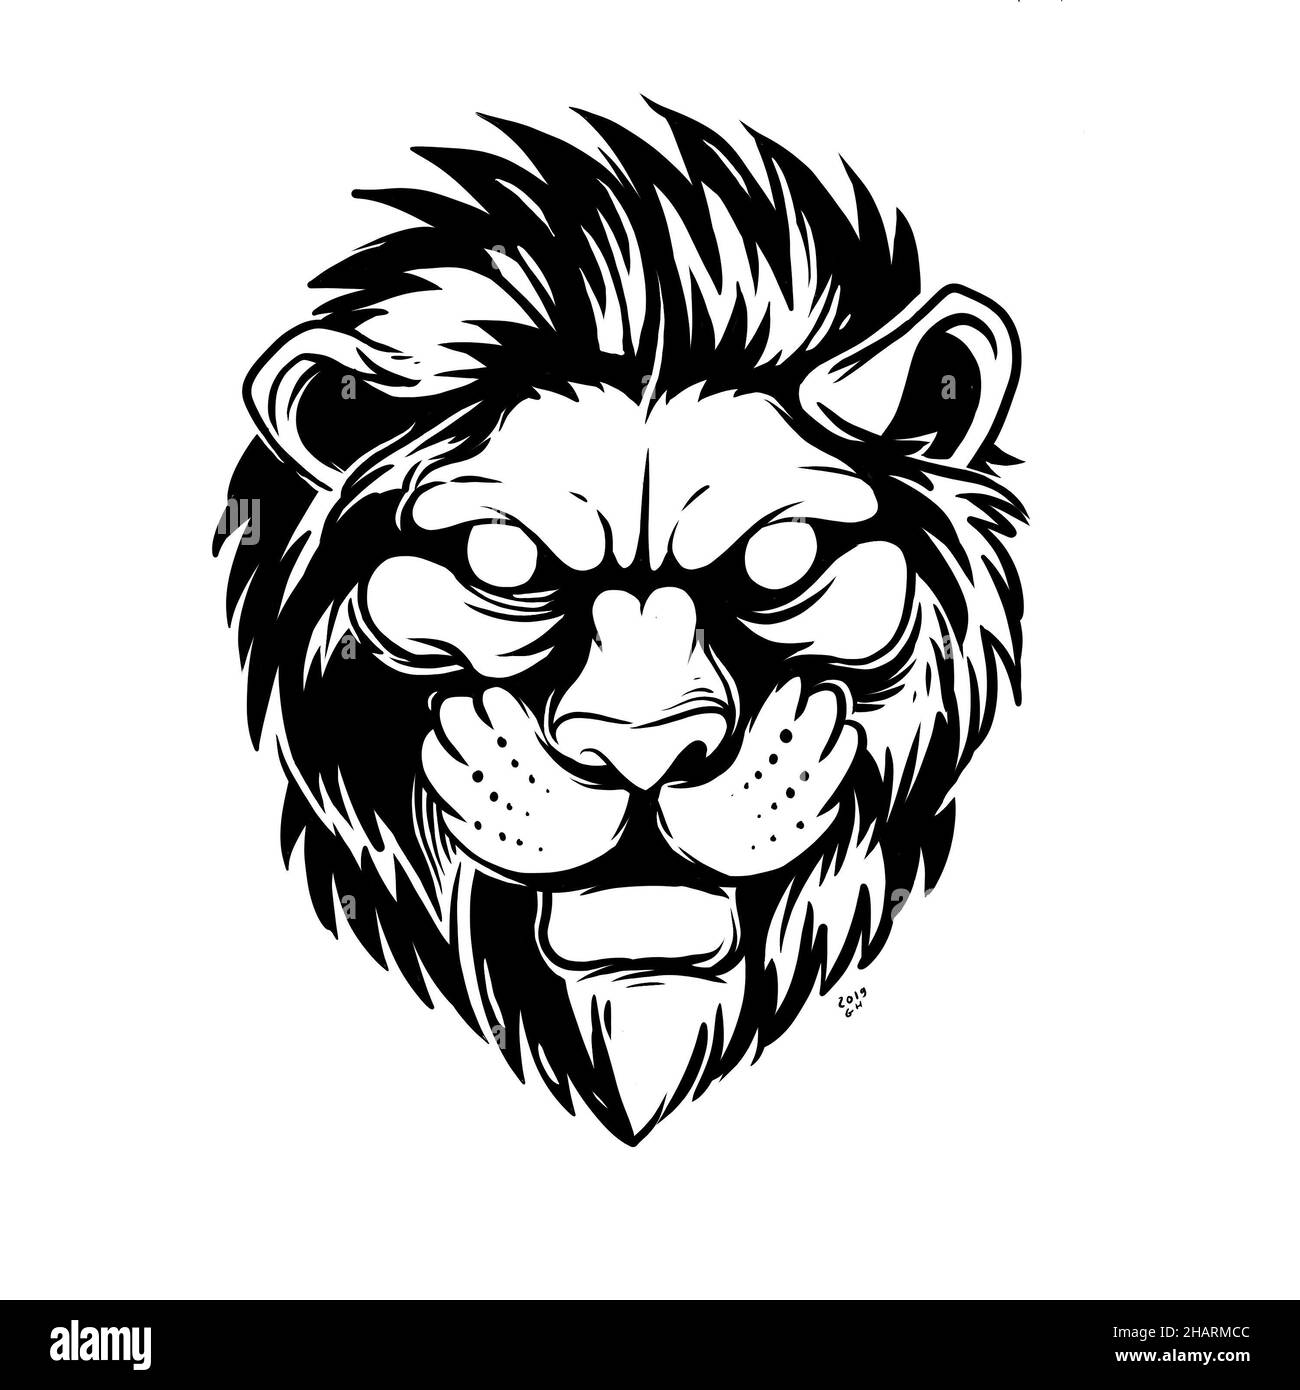 una faccia di leone in modalità allerta. un'illustrazione disegnata a mano di una testa di animale selvatico. disegno di arte di linea per emblema, poster, adesivo, tatuaggio, ecc. Foto Stock